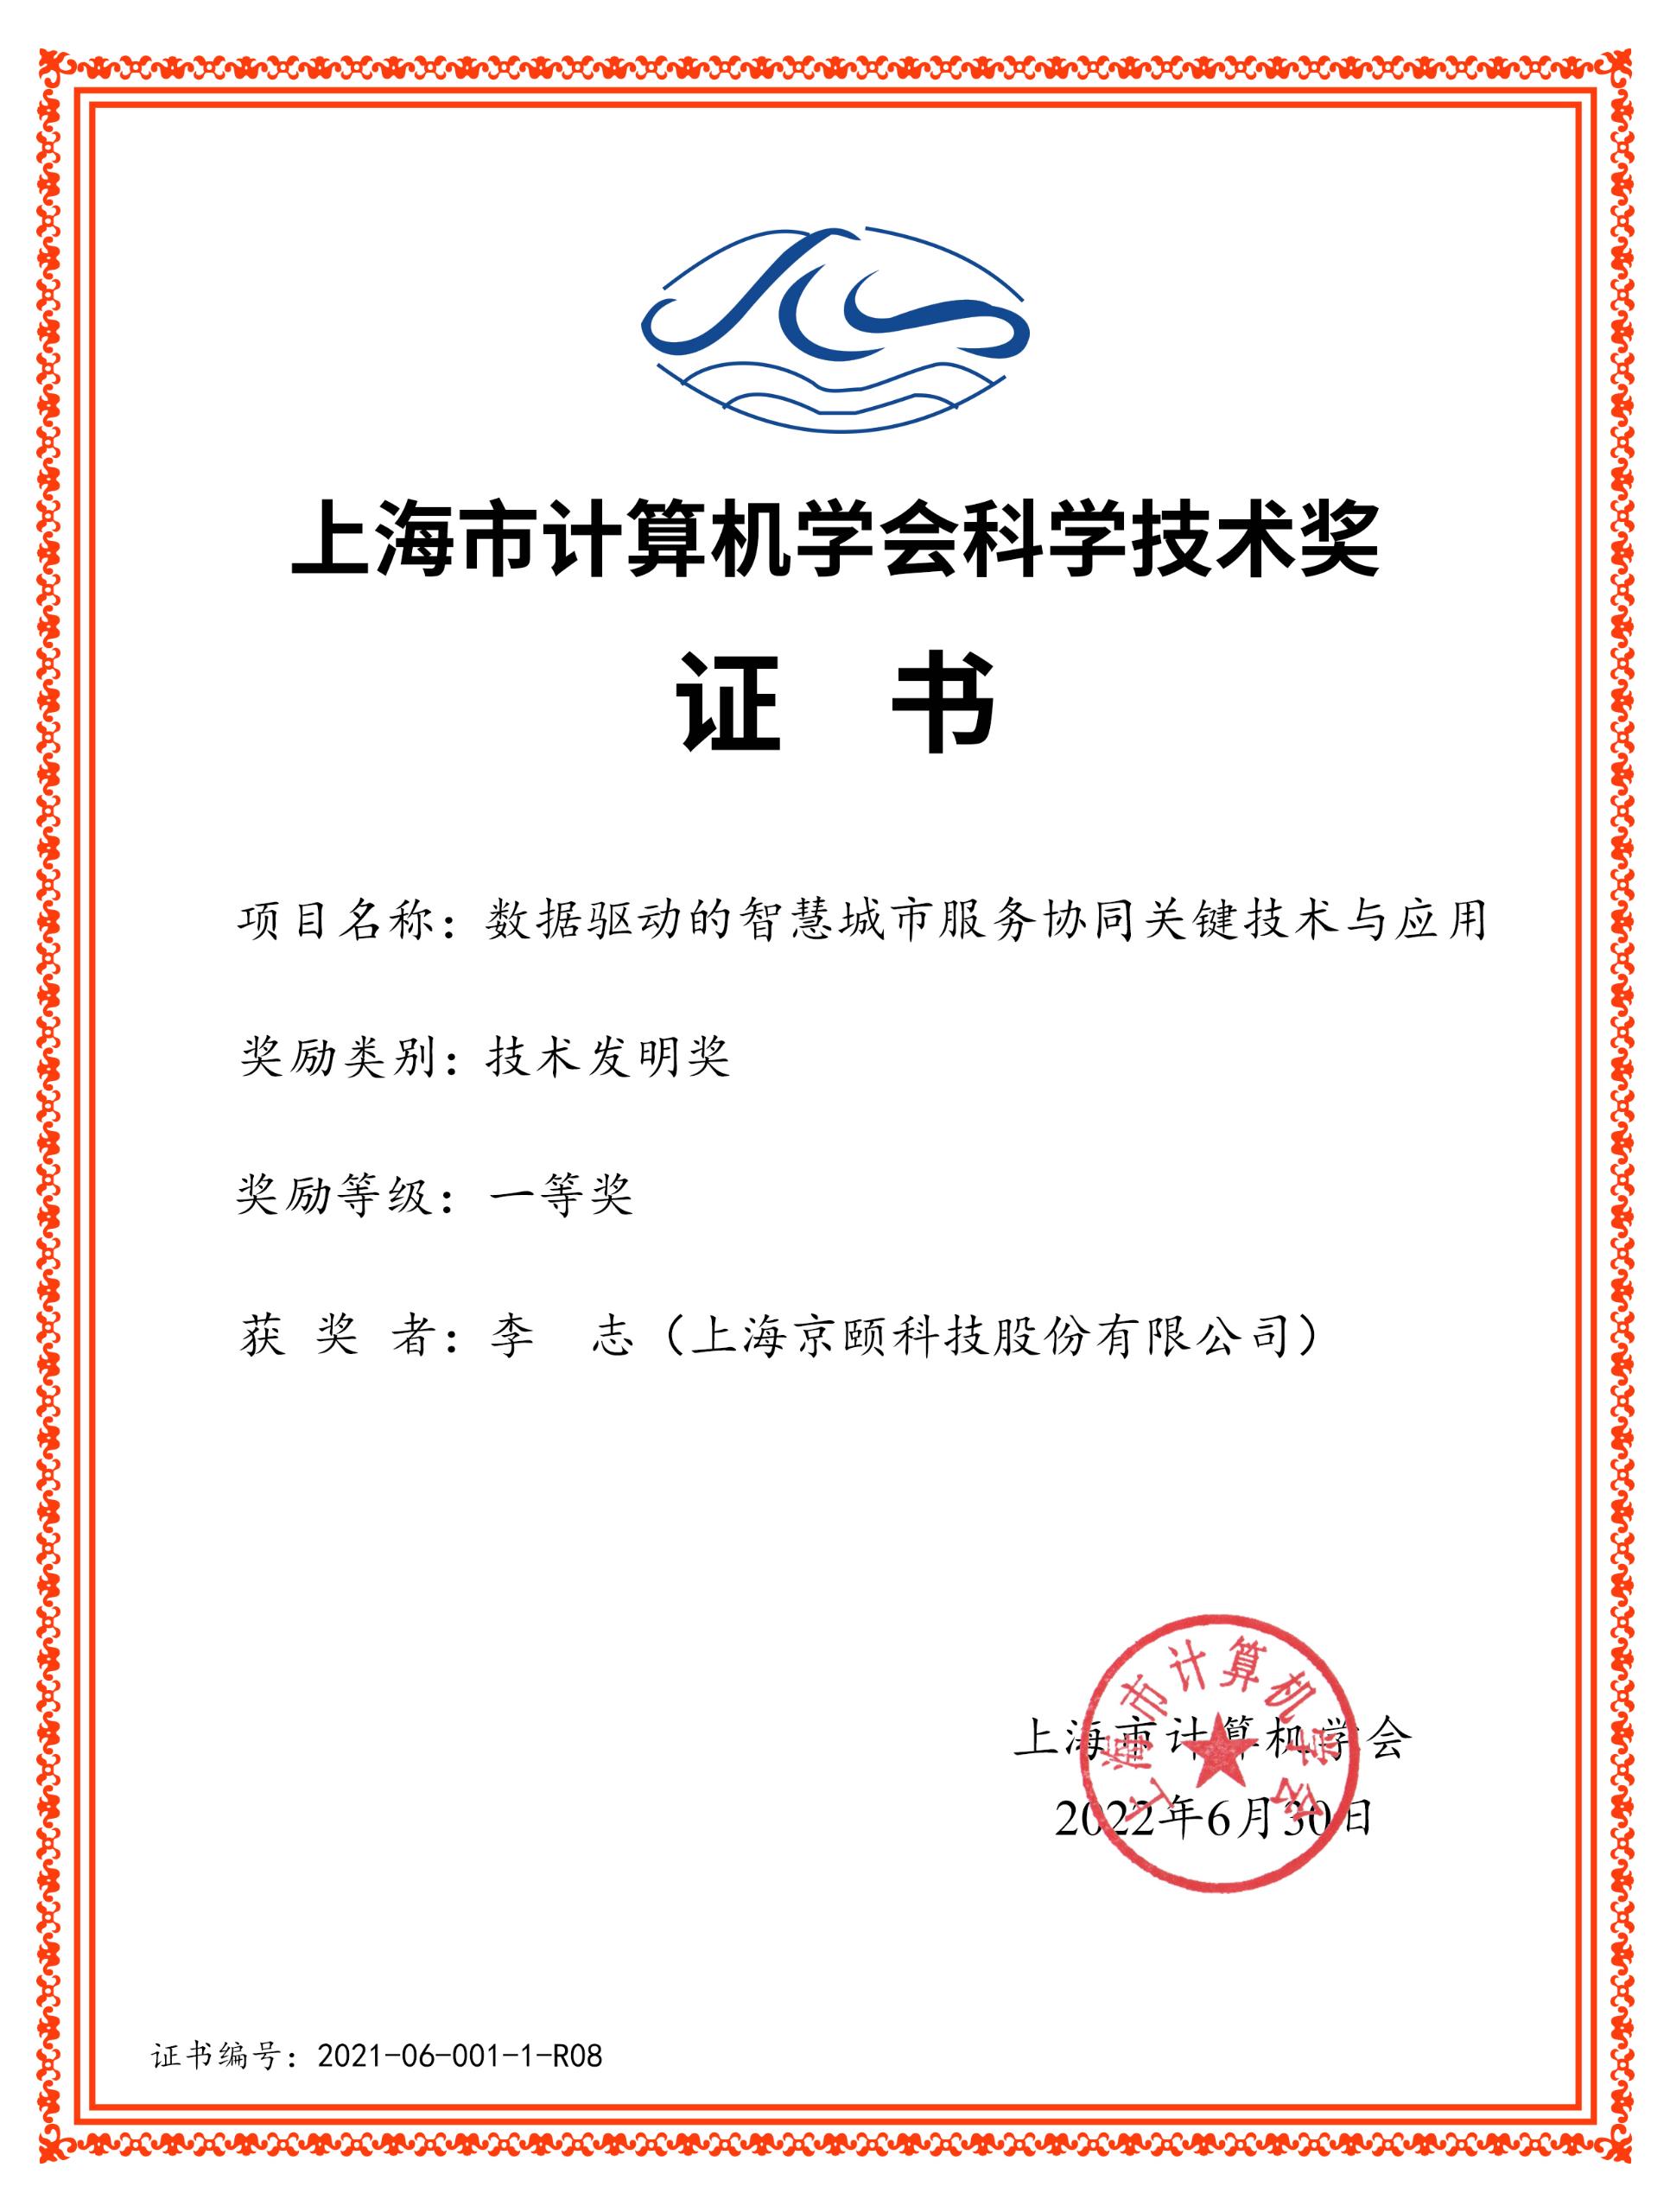 上海市計算機學會科學技術獎